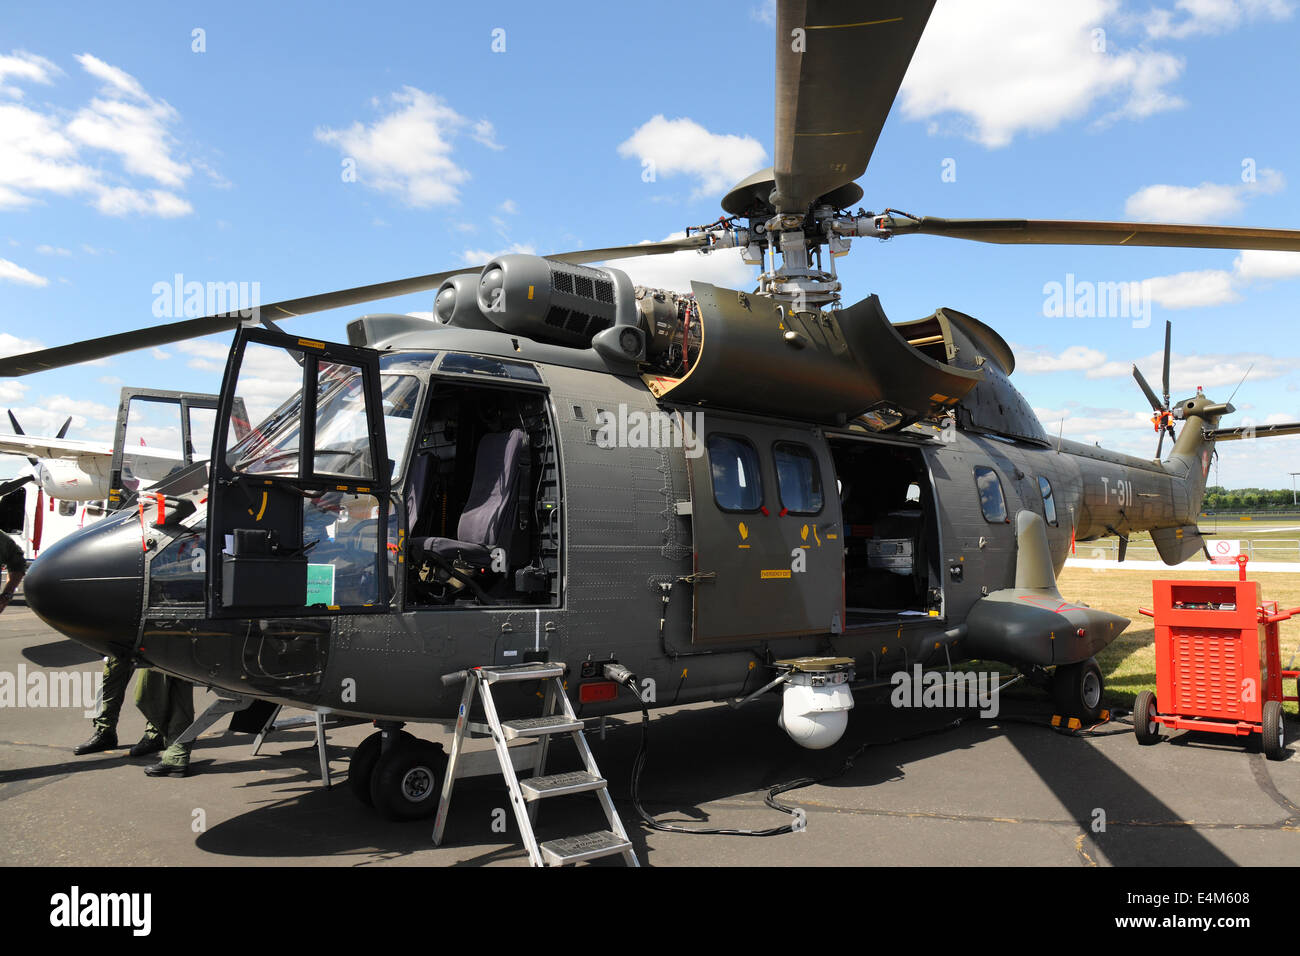 Farnborough, Großbritannien. 14. Juli 2014. Ein Hubschrauber Eurocopter AS332 M1 Super Puma Schweizer Luftwaffe TH06 auf dem Display auf der Farnborough International Air Show Farnborough, UK. Kredit-14. Juli 2014: Martin Brayley/Alamy Live-Nachrichten Stockfoto